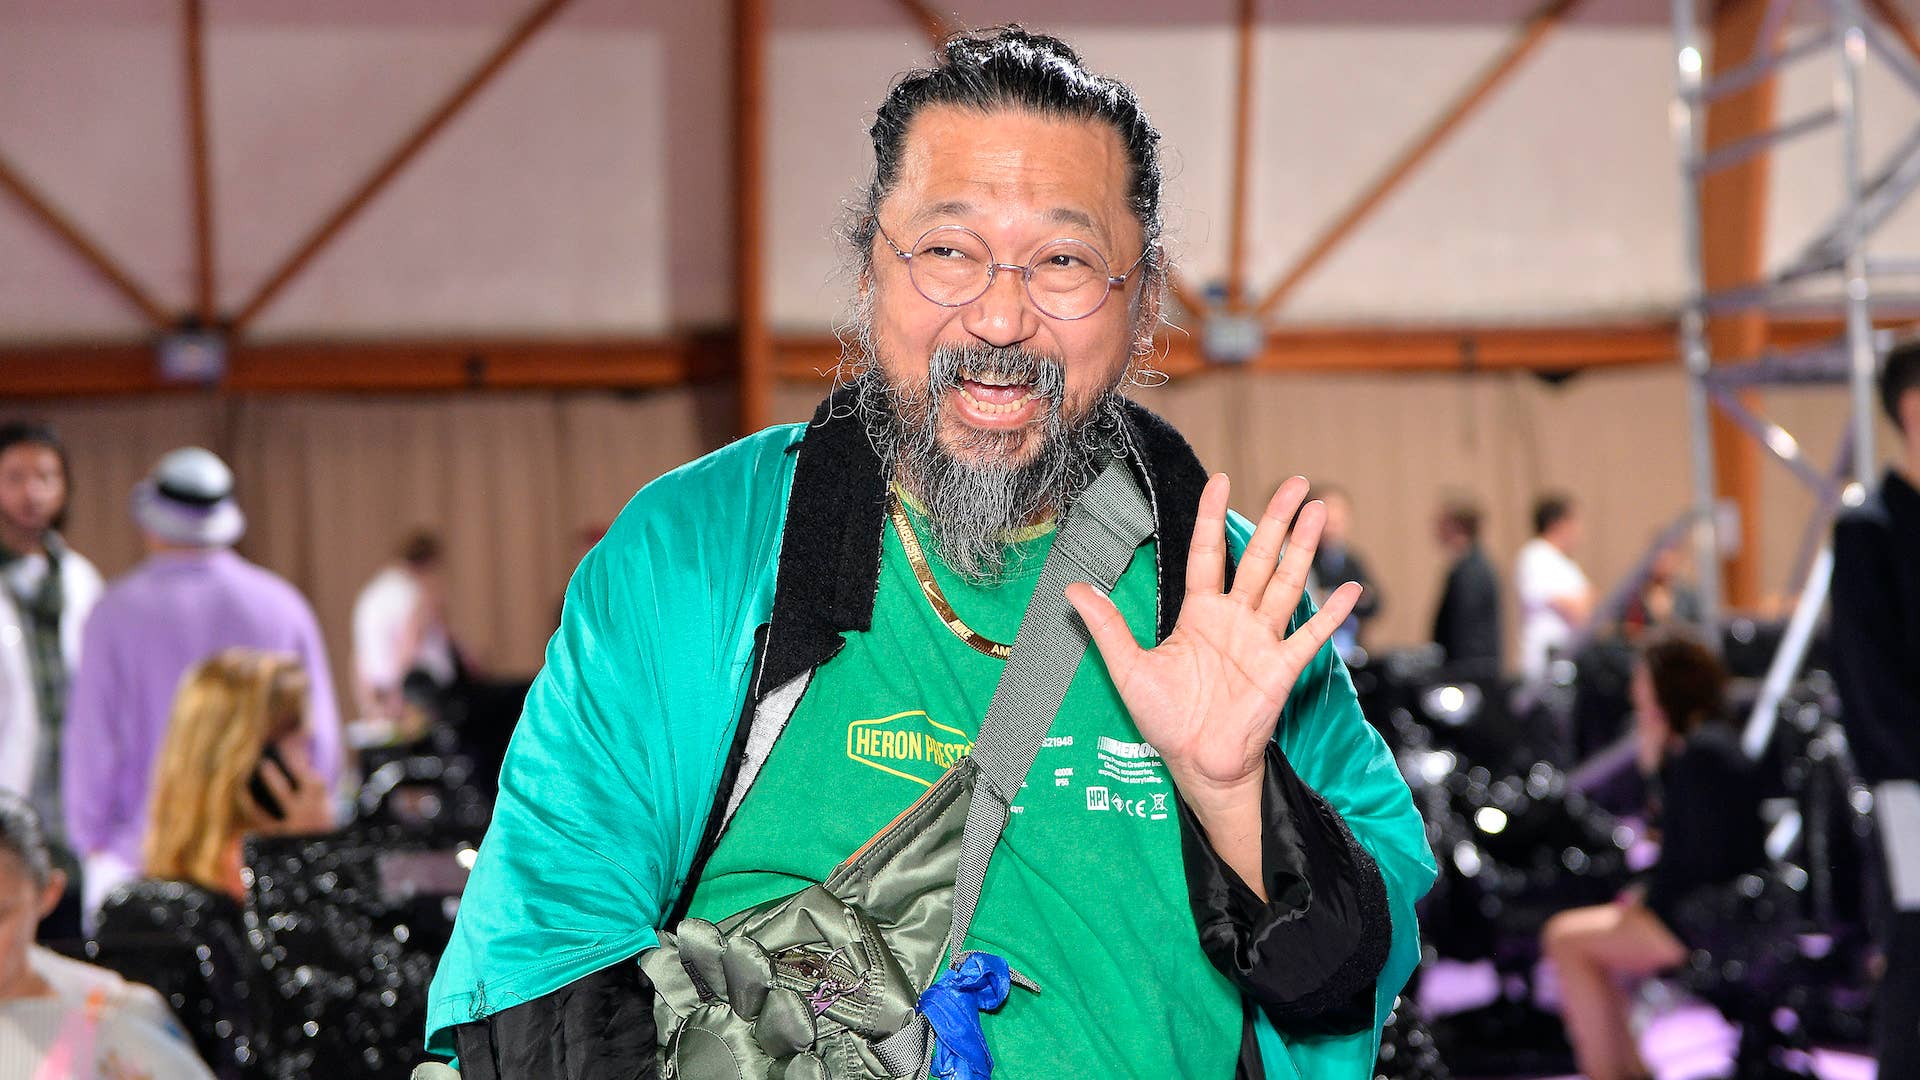 Takashi Murakami x Perrier Tote Bag